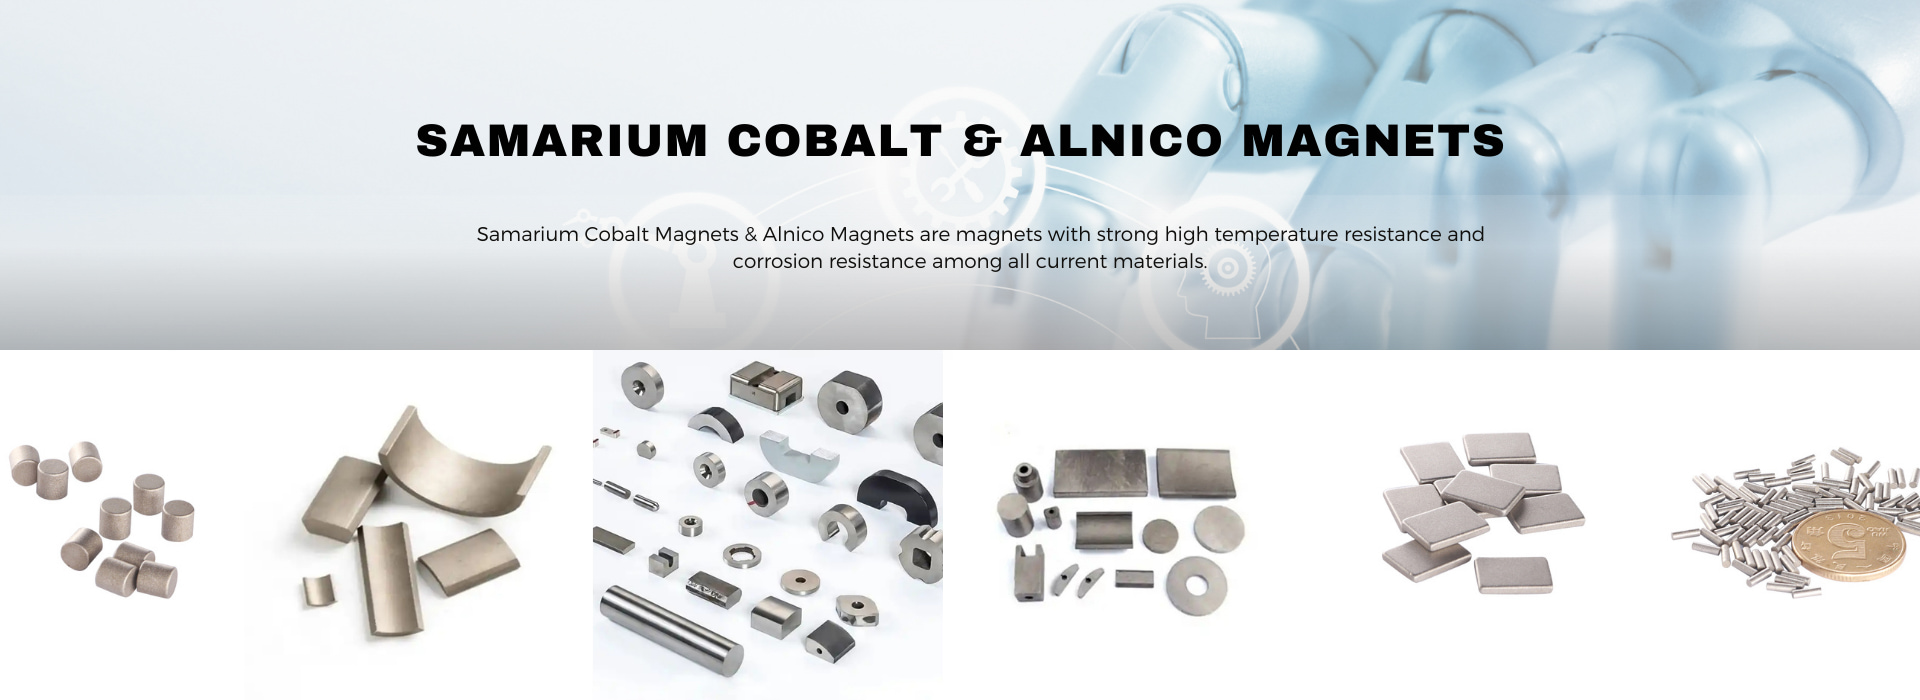 Samarium Cobalt & Alnico Magnets